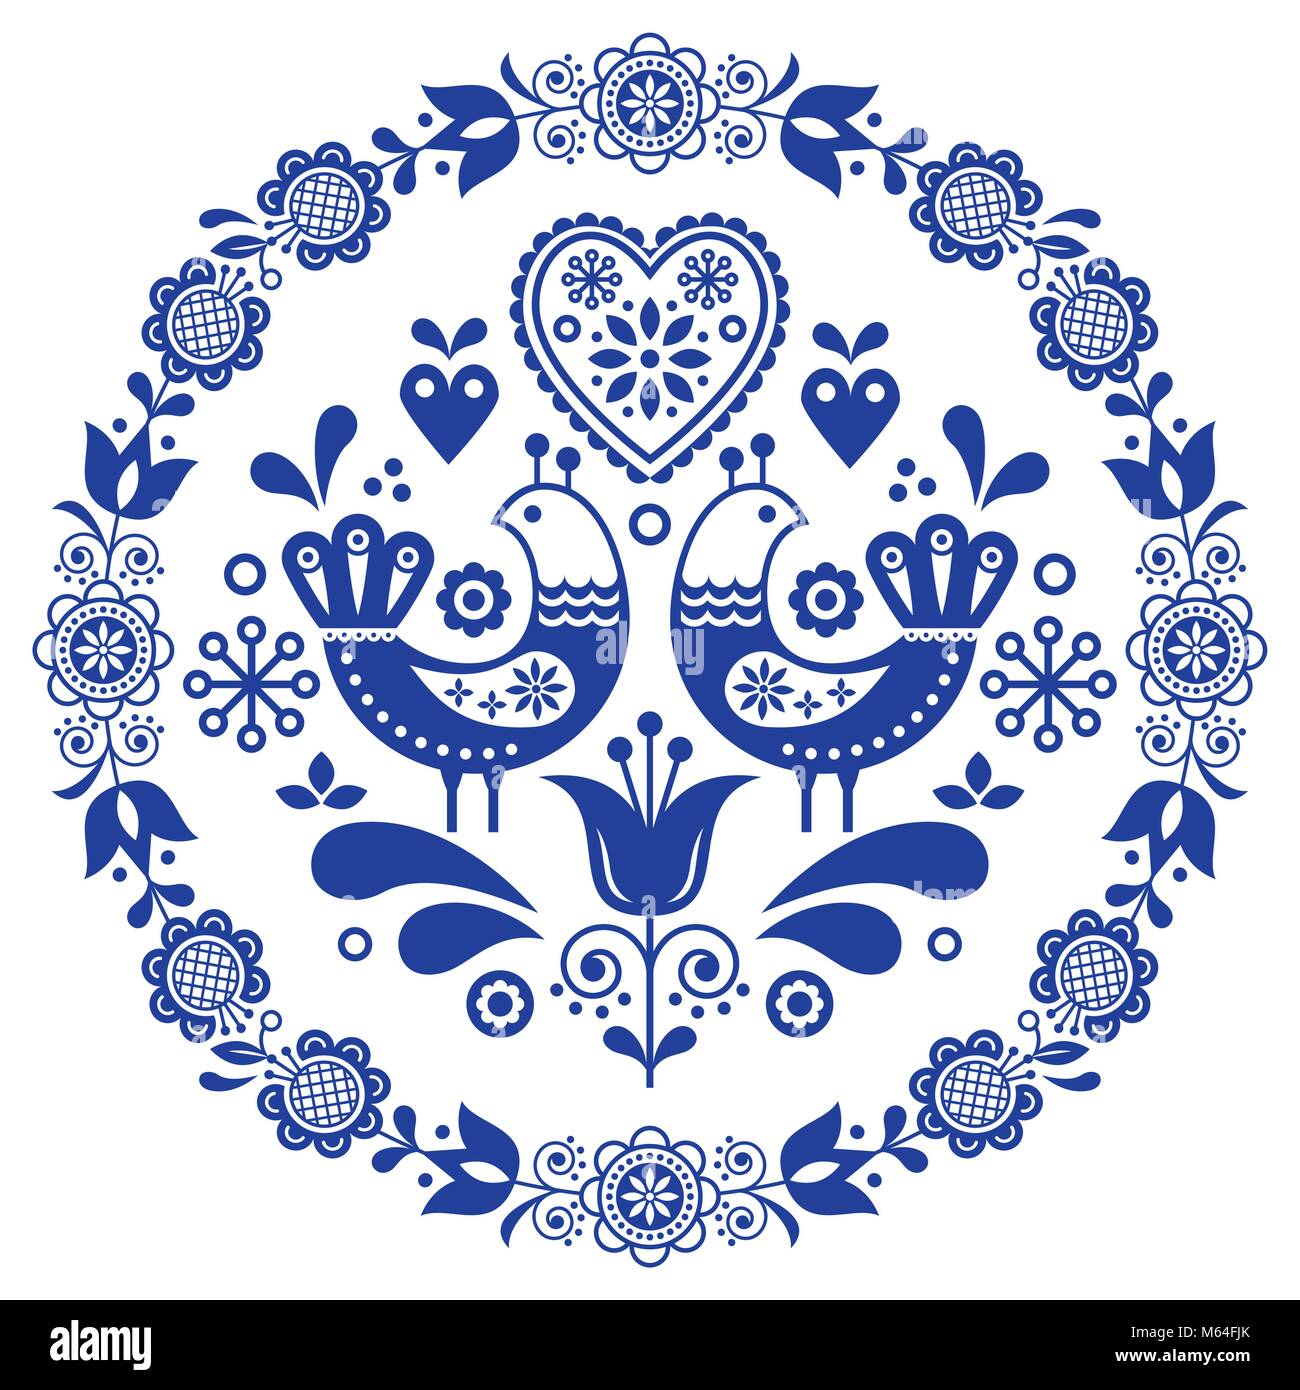 Vecteur d'art populaire d'ornement rond cadre avec des oiseaux, des coeurs,  et des fleurs, le design scandinave en cercle Image Vectorielle Stock -  Alamy